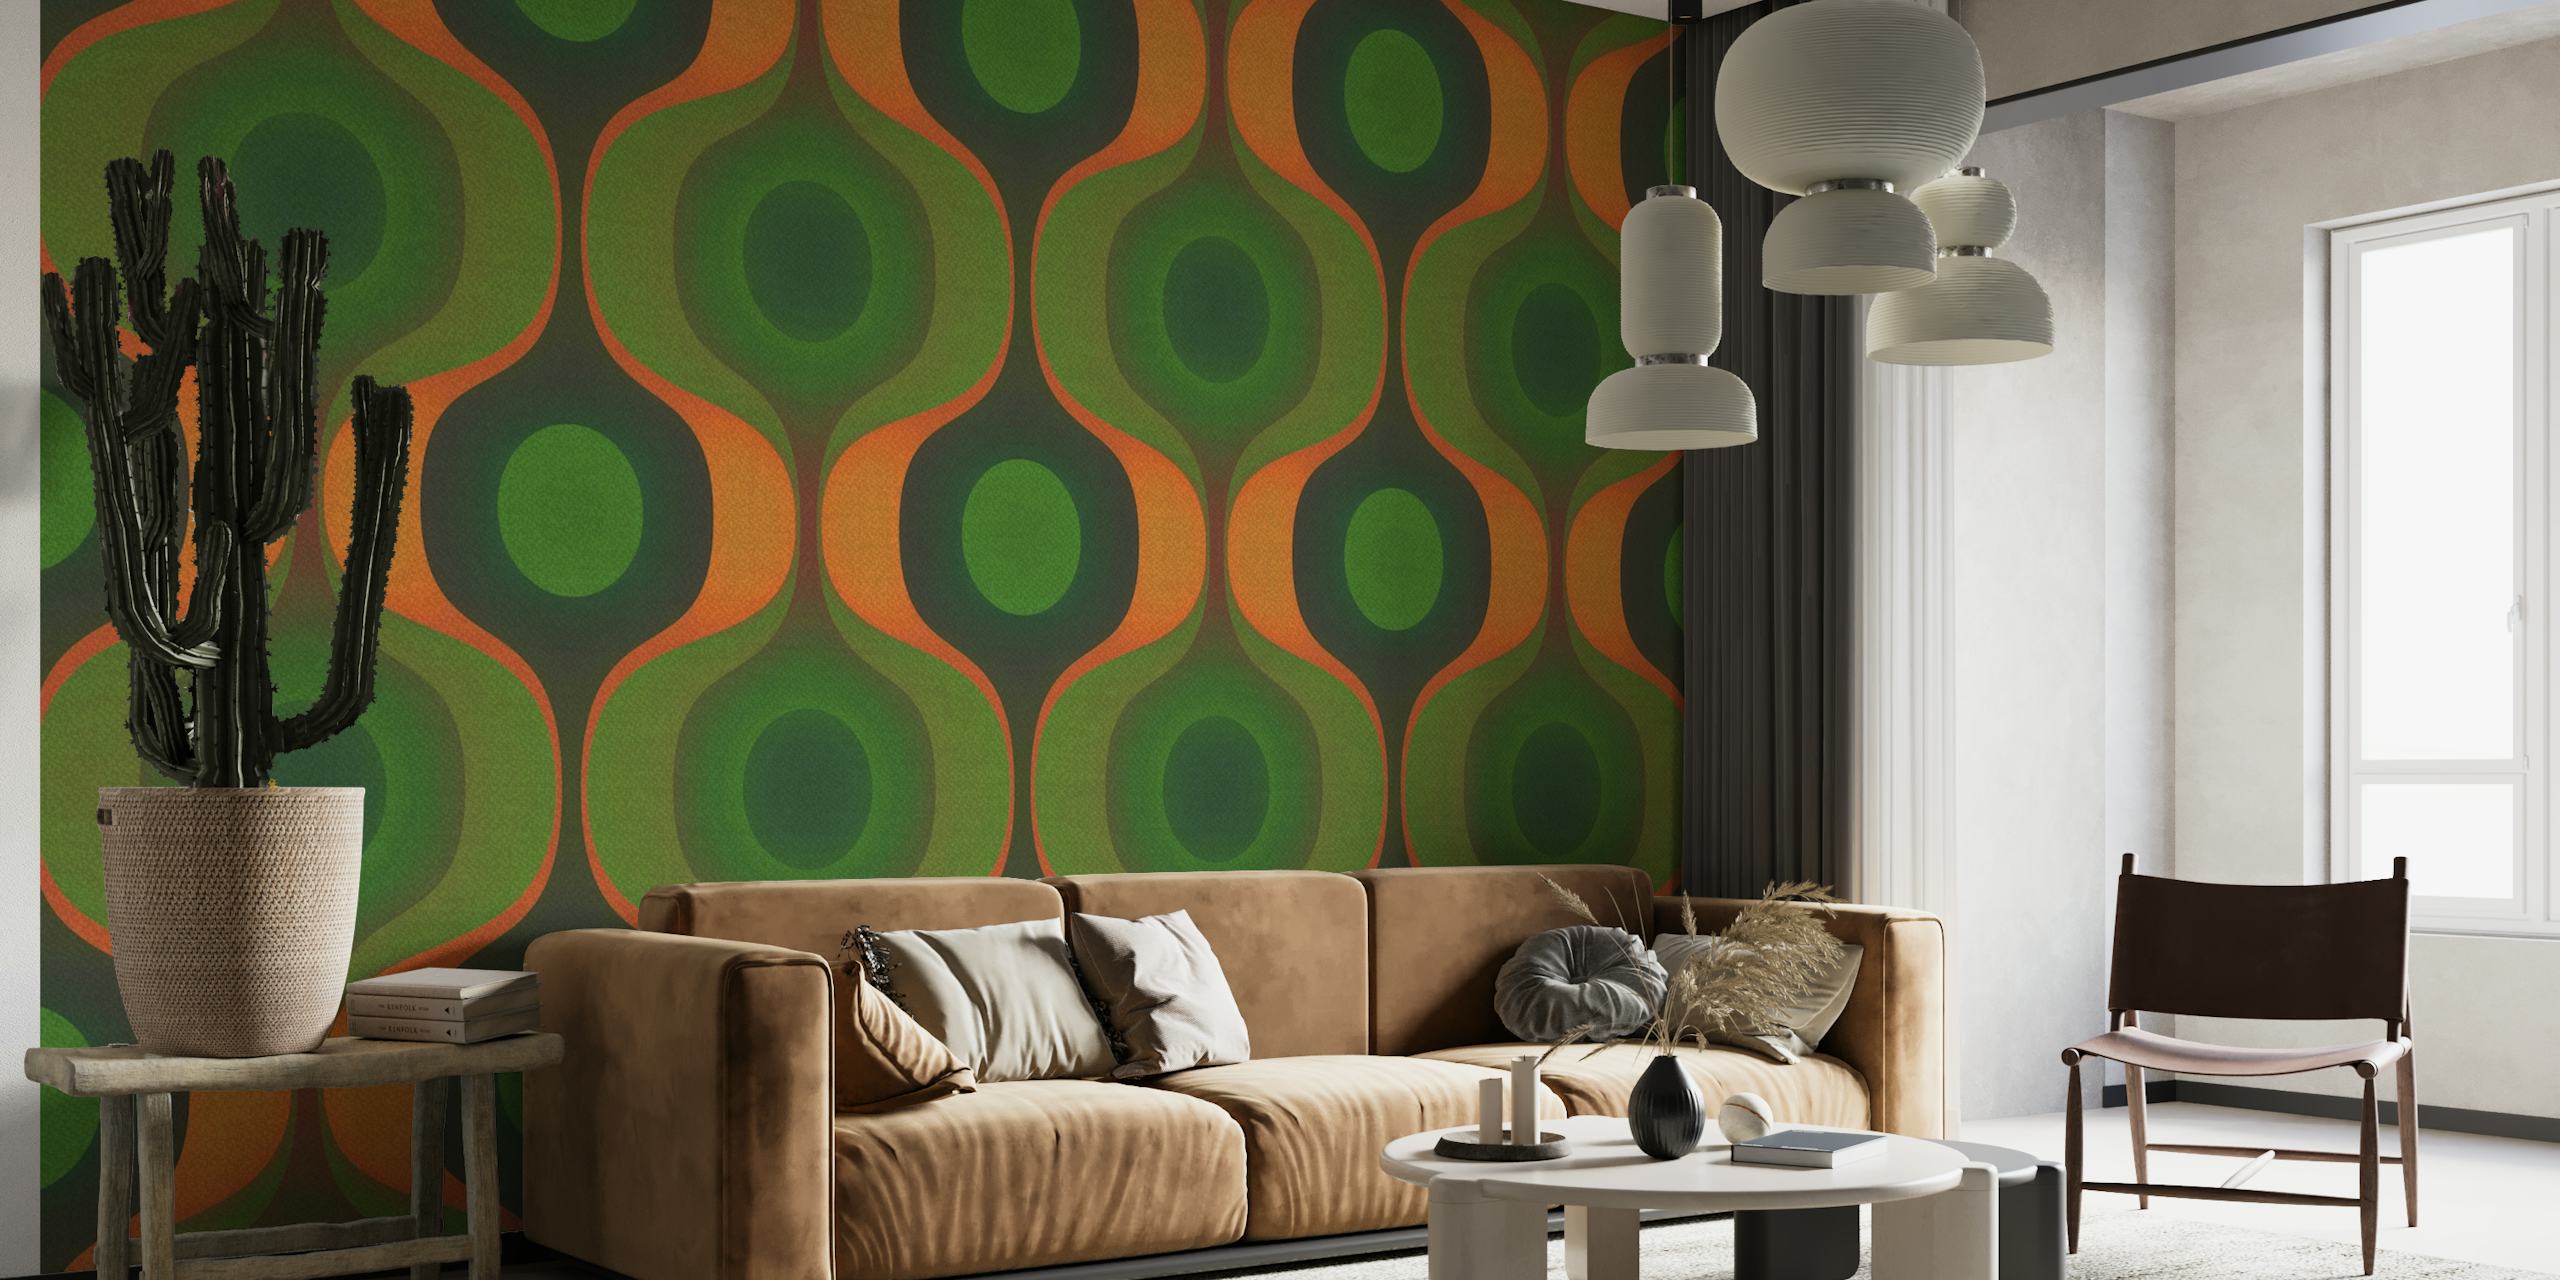 Grønt og orange vægmaleri med geometrisk mønster, der minder om 1970'erne.